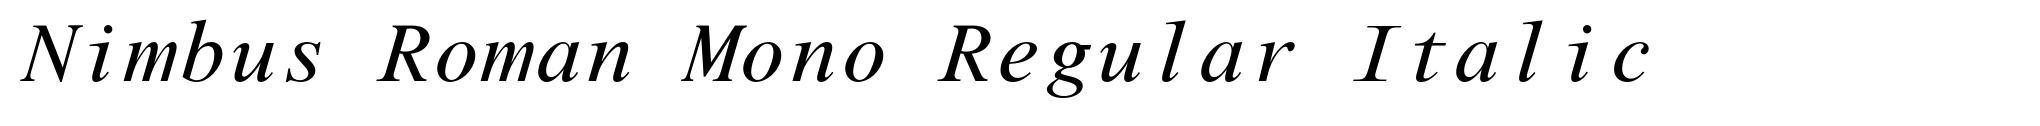 Nimbus Roman Mono Regular Italic image